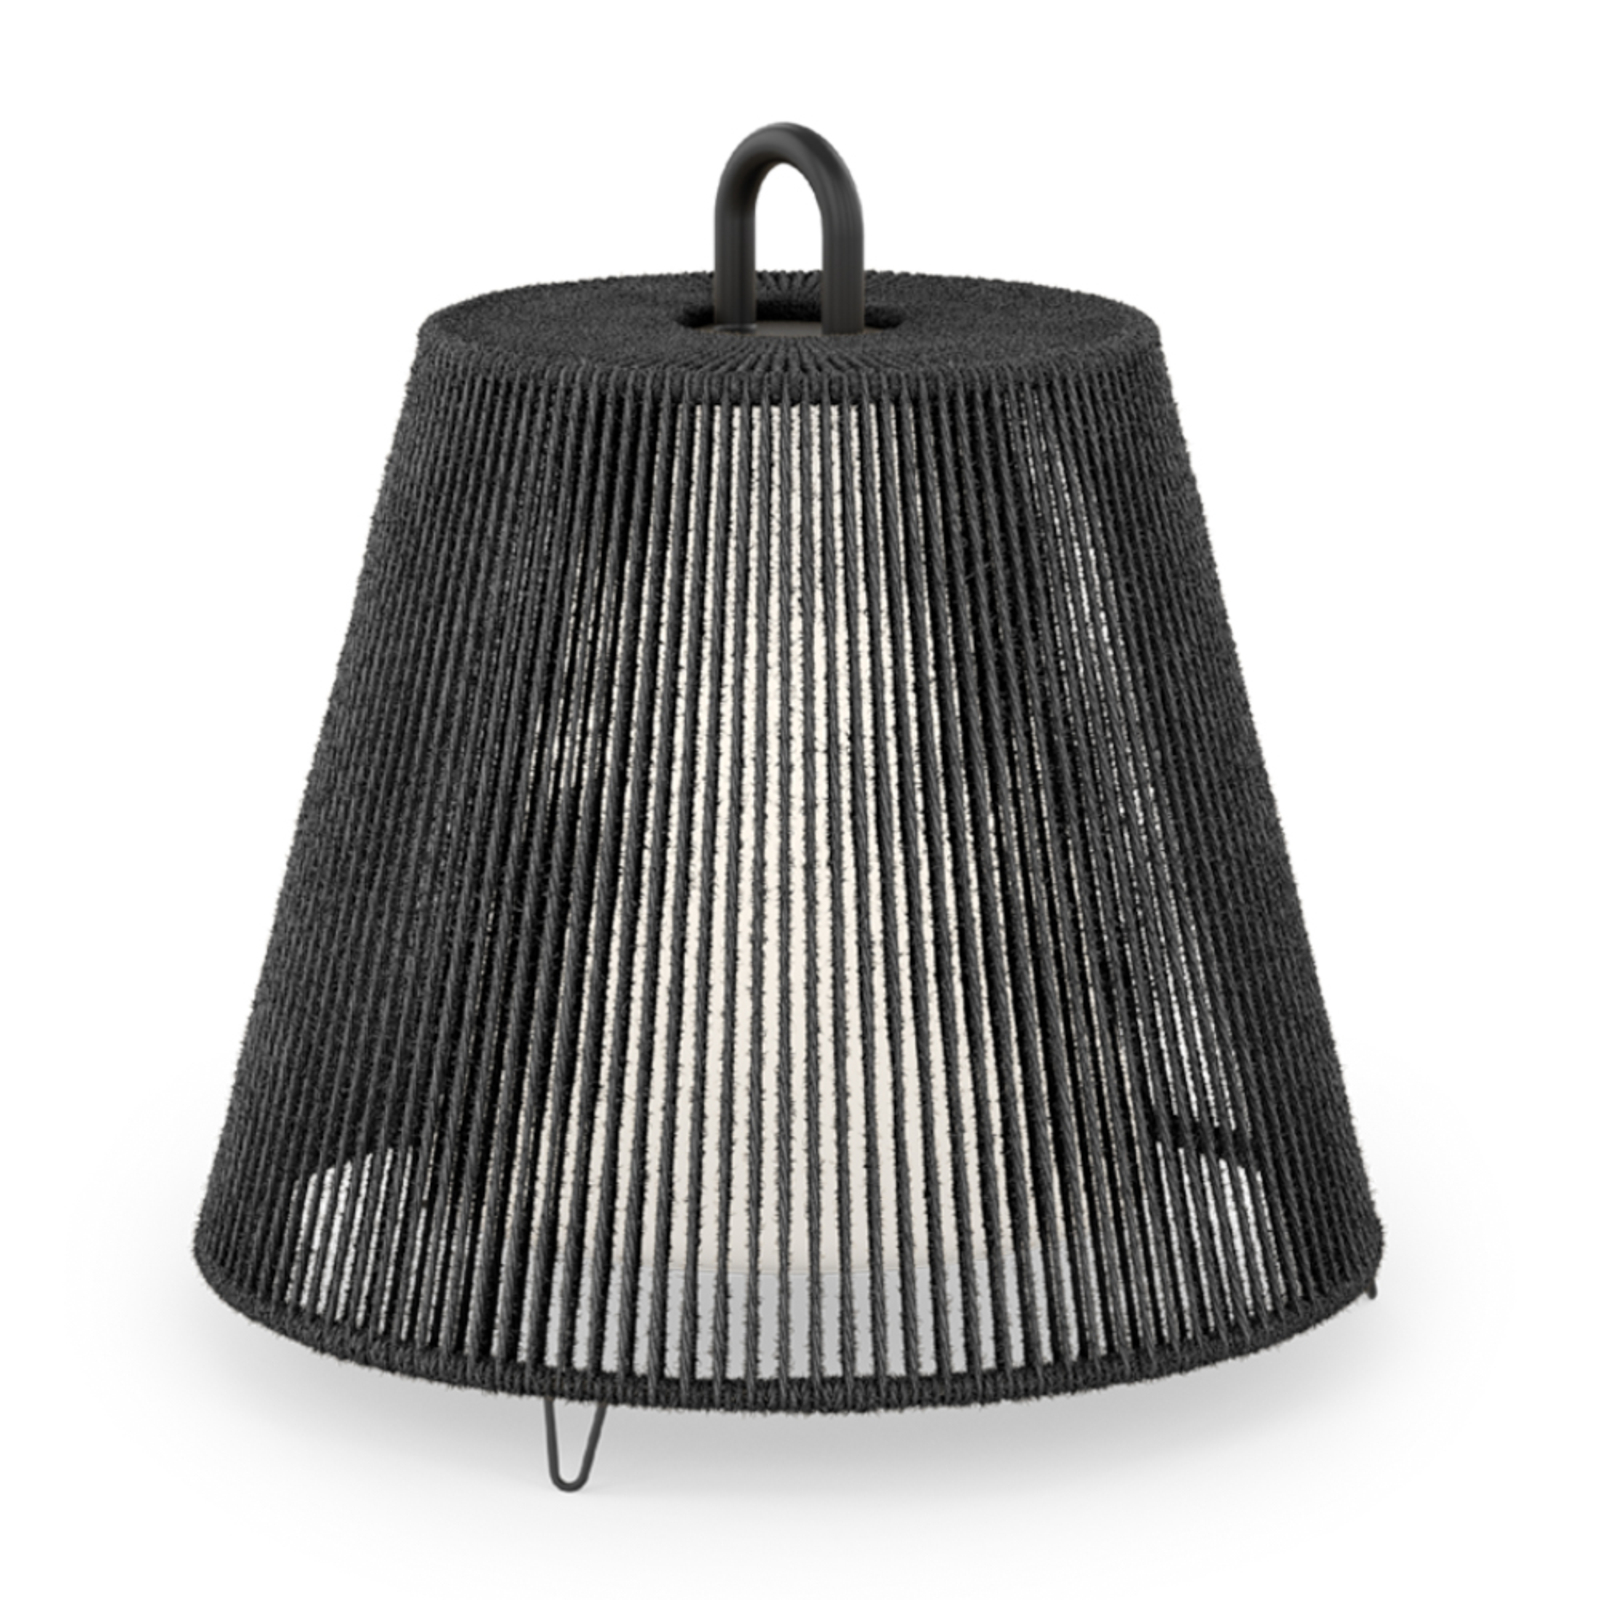 WEVER & DUCRÉ lampeskærm Costa 1.0, sort, reb, Ø 39 cm